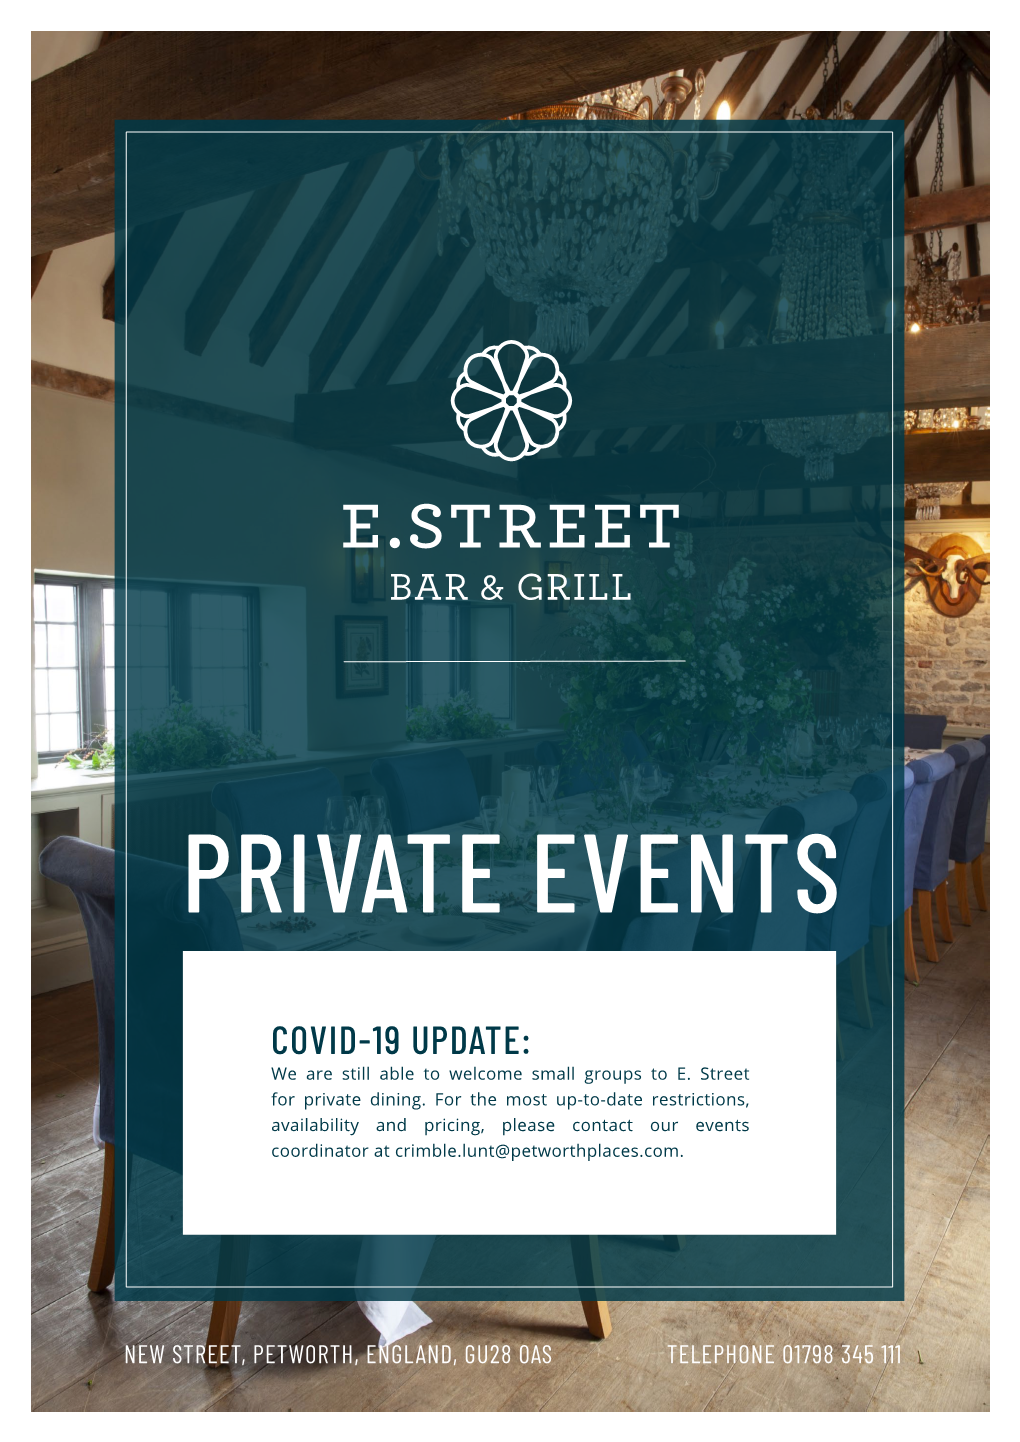 Private Events